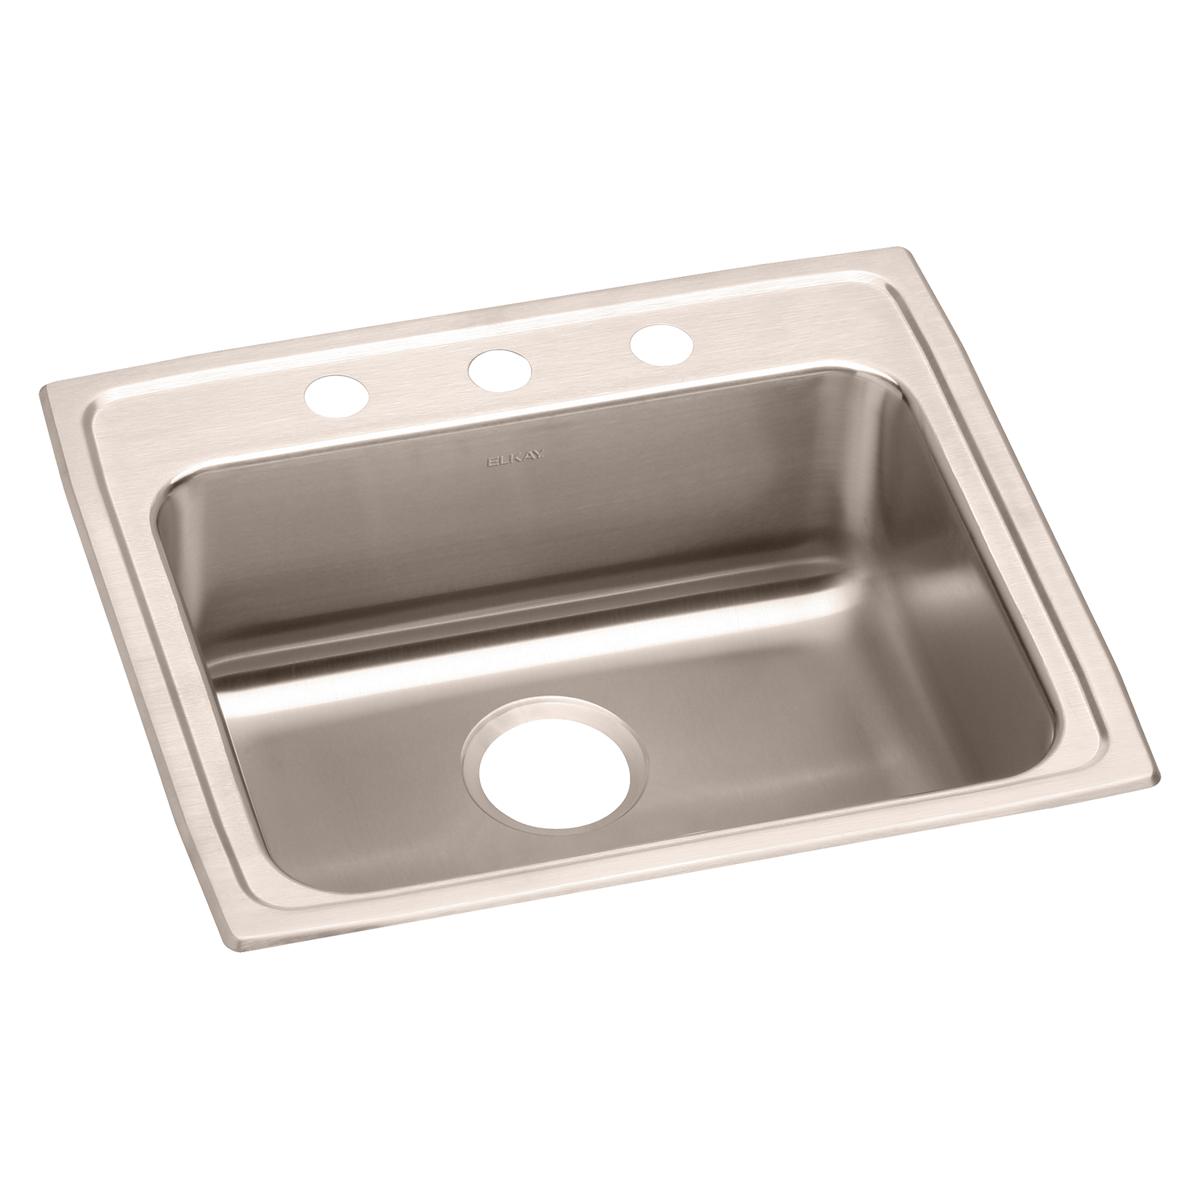 Elkay Lustertone Classic Stainless Steel 22" x 19-1/2" x 5-1/2", Single Bowl Drop-in ADA Sink